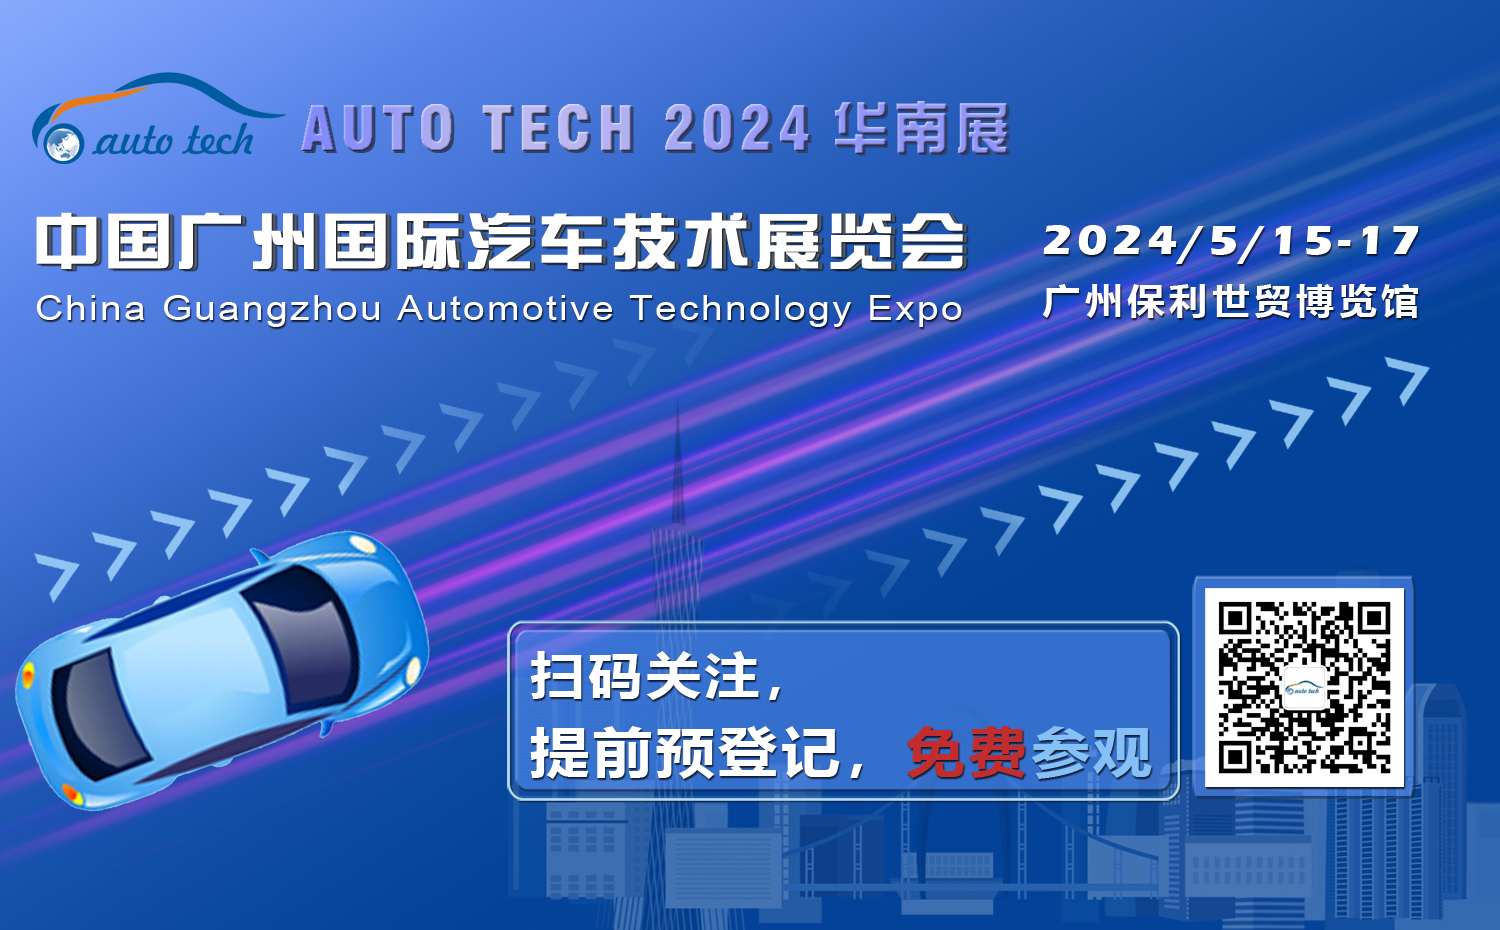 免费参观︱AUTO TECH 2024 广州国际汽车技术展专业观众预登记开始啦！